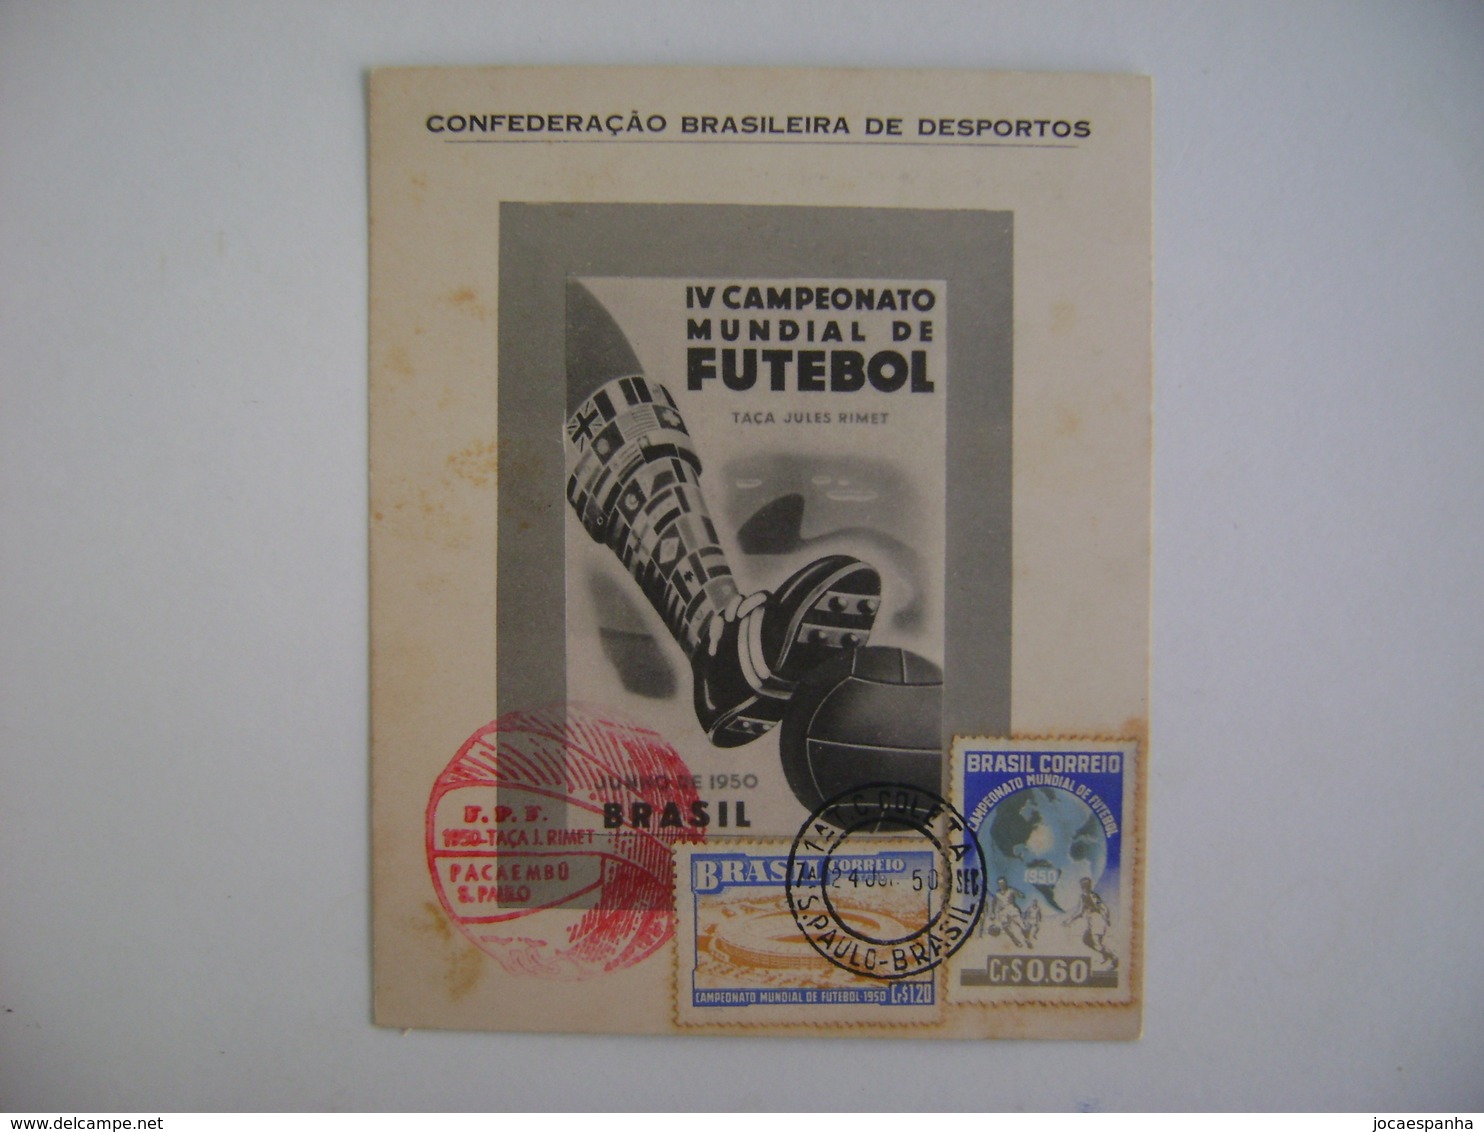 BRAZIL / BRASIL - MAXIMUN TYPE COMMEMORATIVE SHEET WORLD FOOTBALL SOCCER CHAMPIONSHIP 24-6-1950 IN THE STATE - 1950 – Brasilien